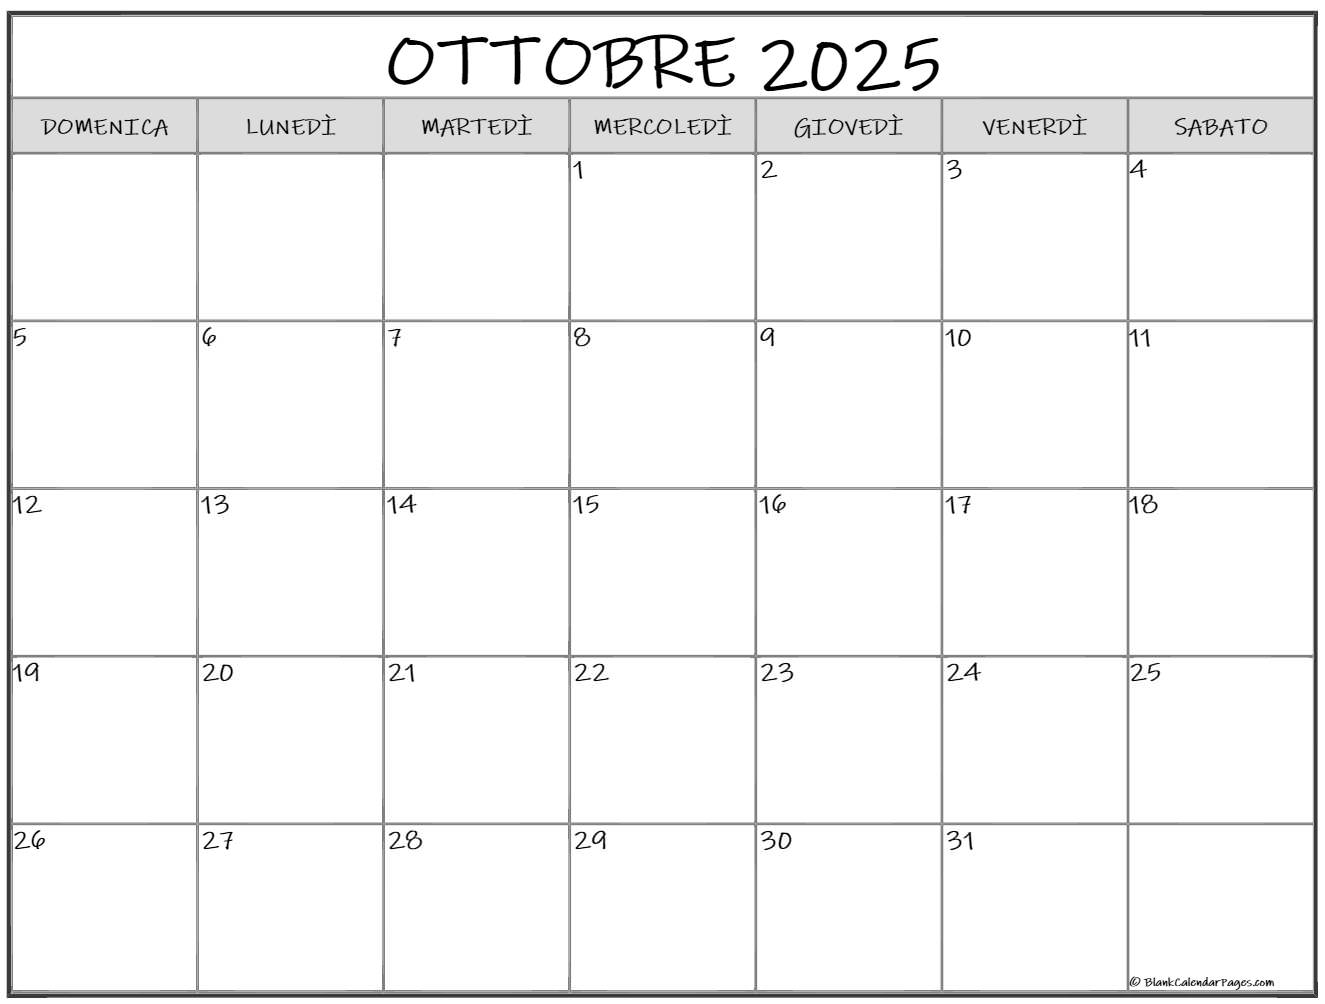 ottobre 2025 calendario gratis italiano  Calendario ottobre